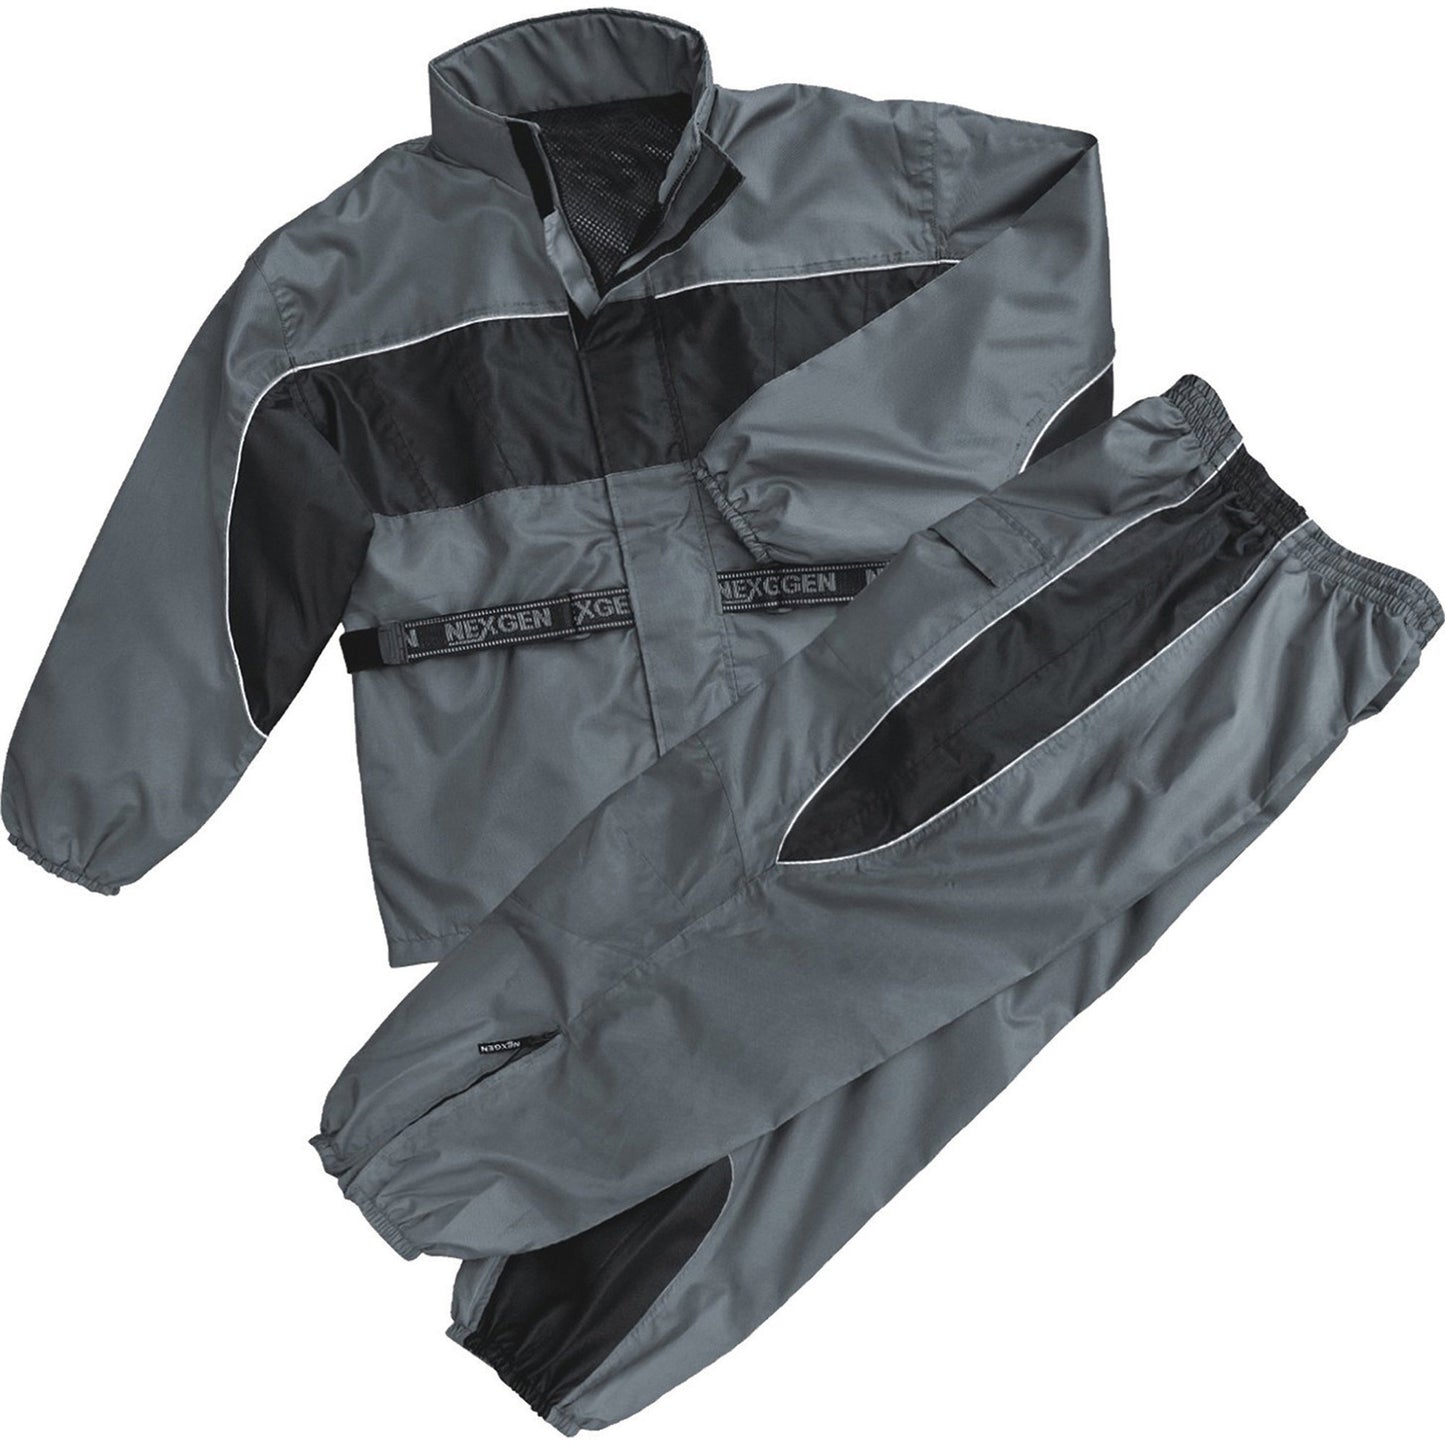 NexGen SH2216 Men's Oxford Black and Gray Rain Suit Water Resistant